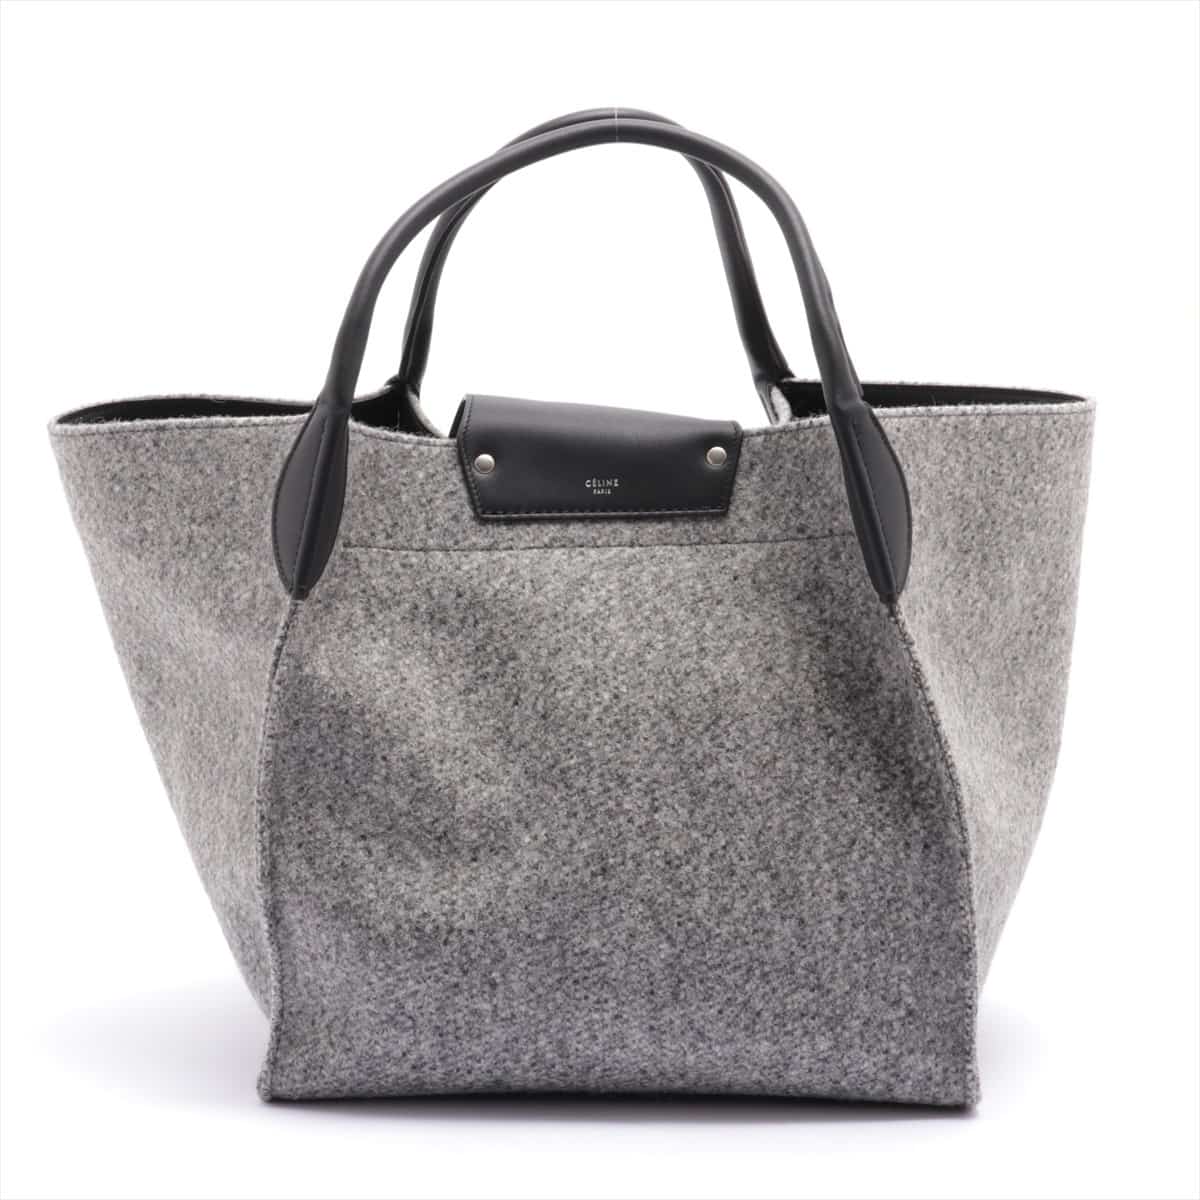 CELINE BIG BAG Medium Wool & leather Tote bag Grey